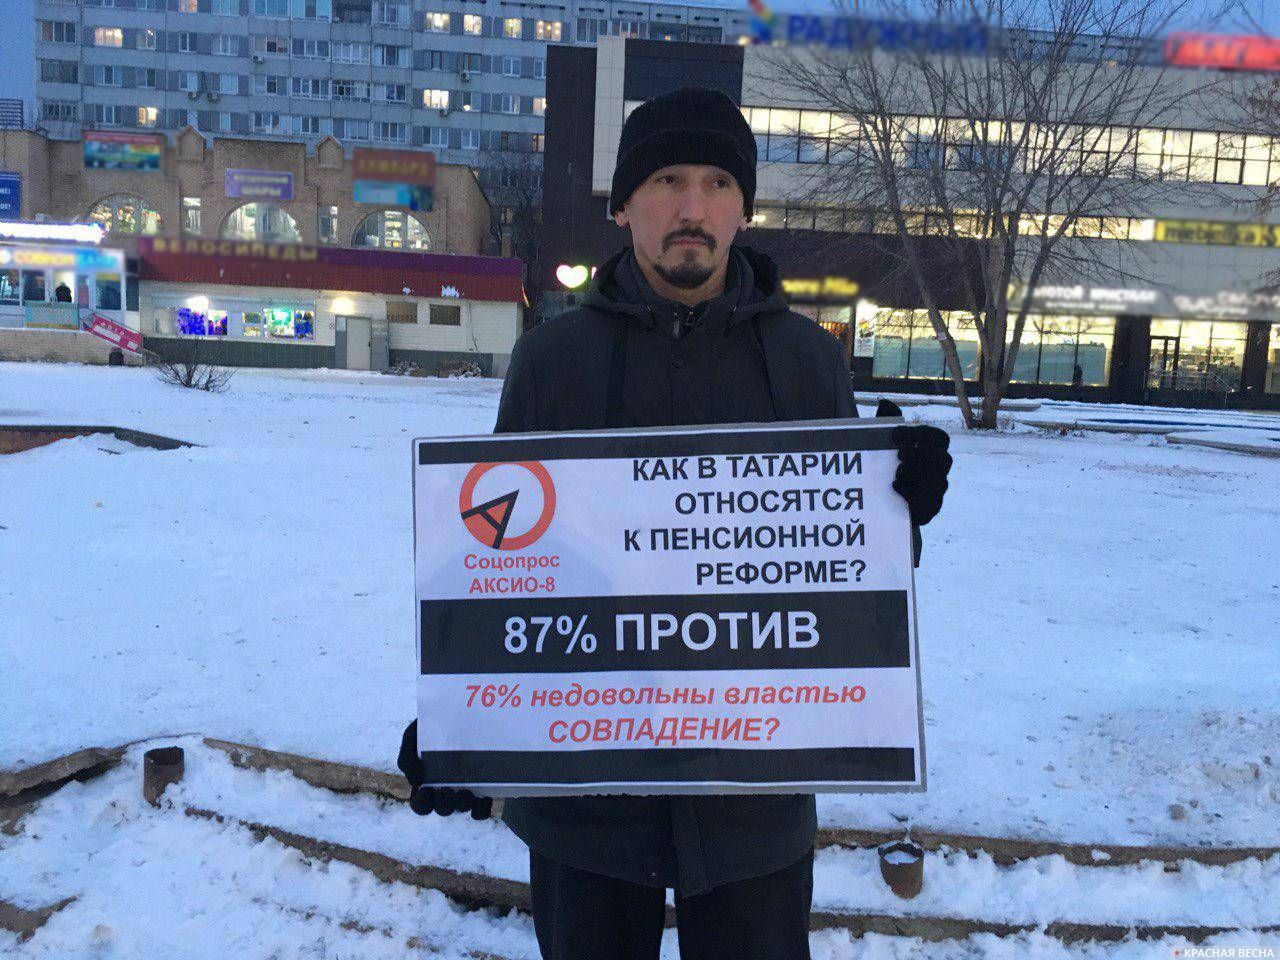 Одиночный пикет против пенсионной реформы 03.12.2019 г.Набережные Челны